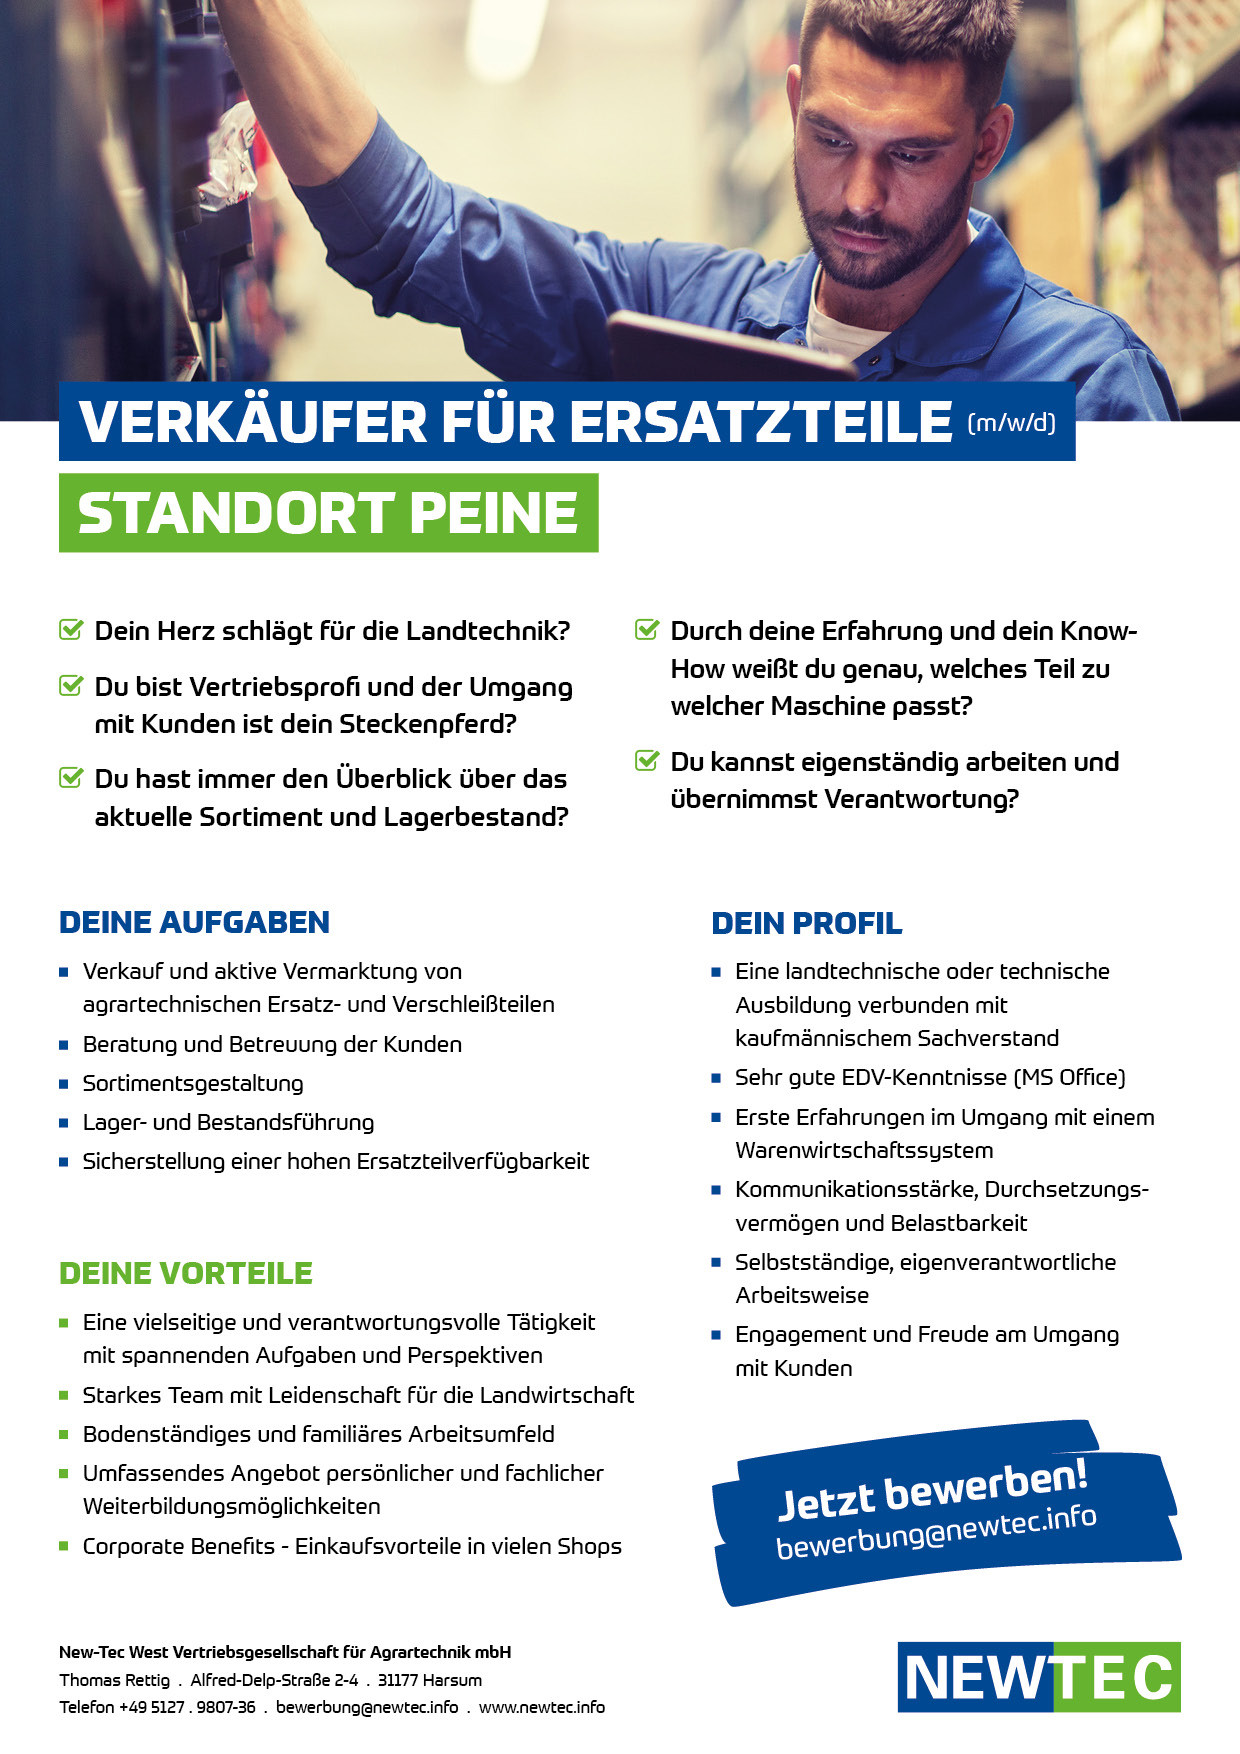 NEWTEC_Stellenanzeige_Verkaeufer_fuer_Ersatzteile_Peine